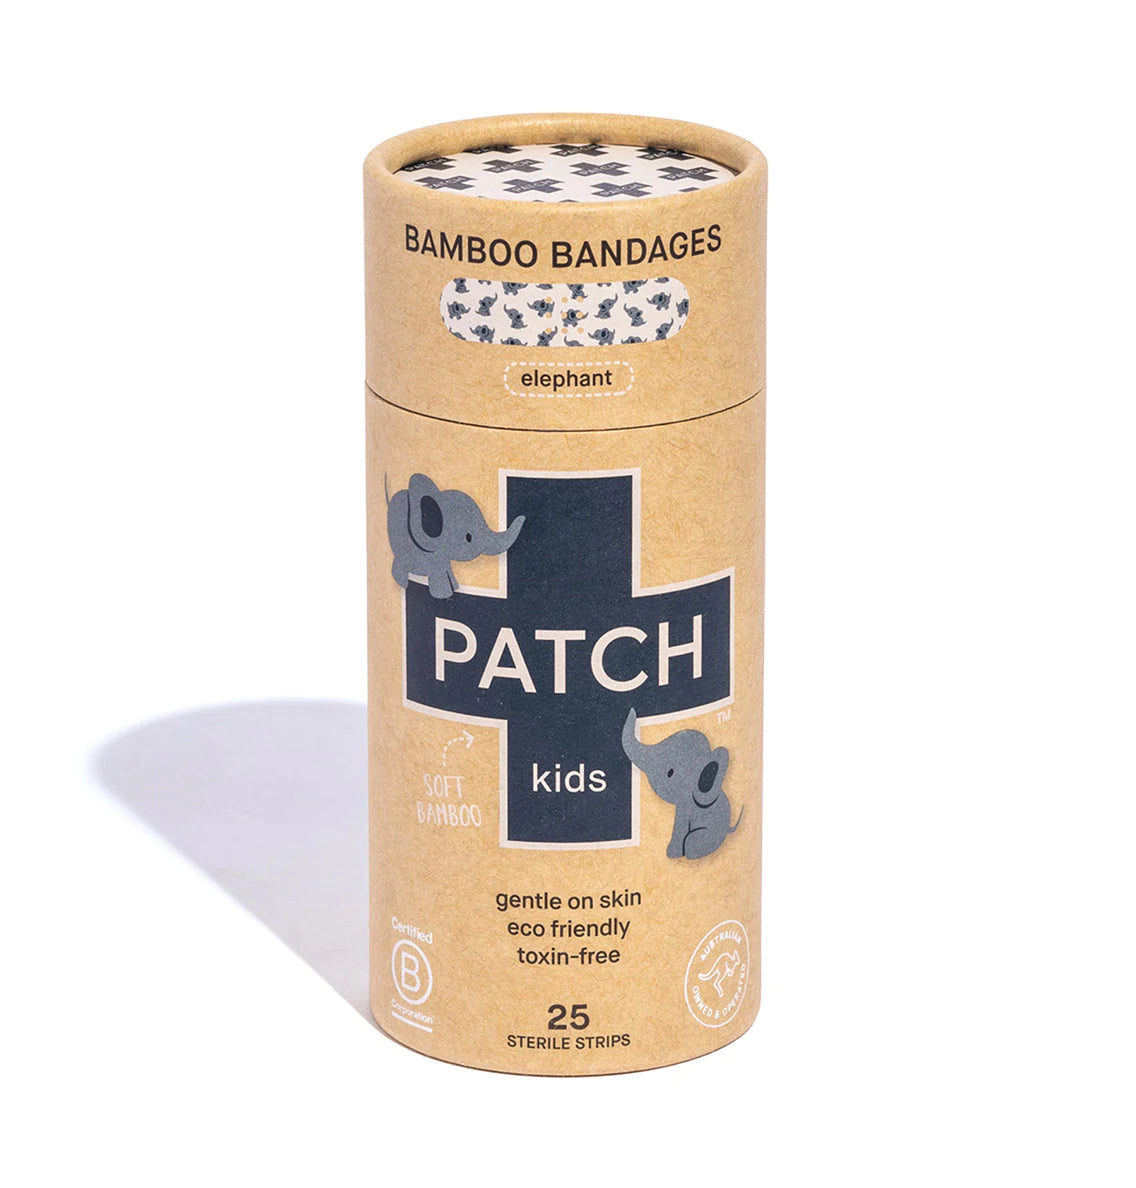 PATCH Bamboo Bandages - Elephant